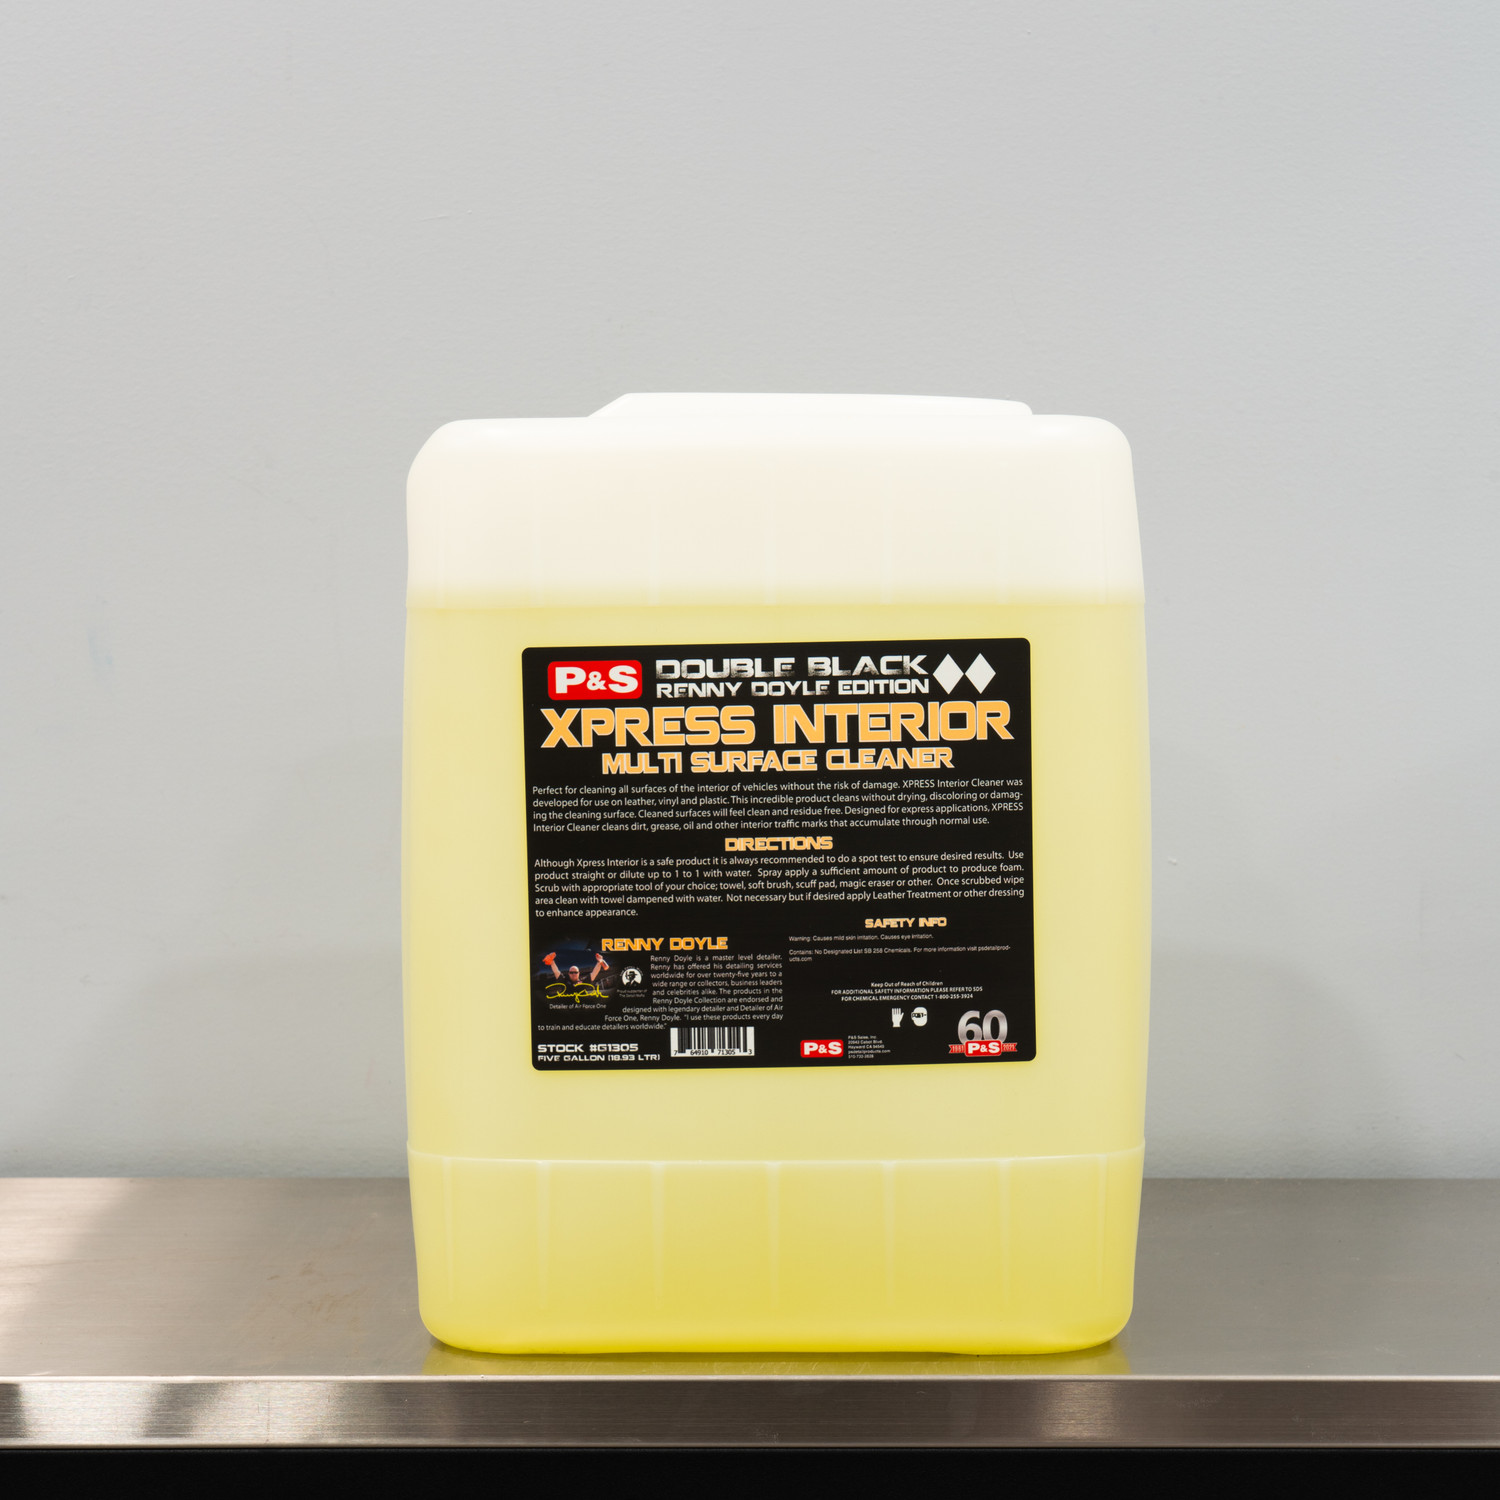 P&S Xpress Interior Cleaner 5 Gallon